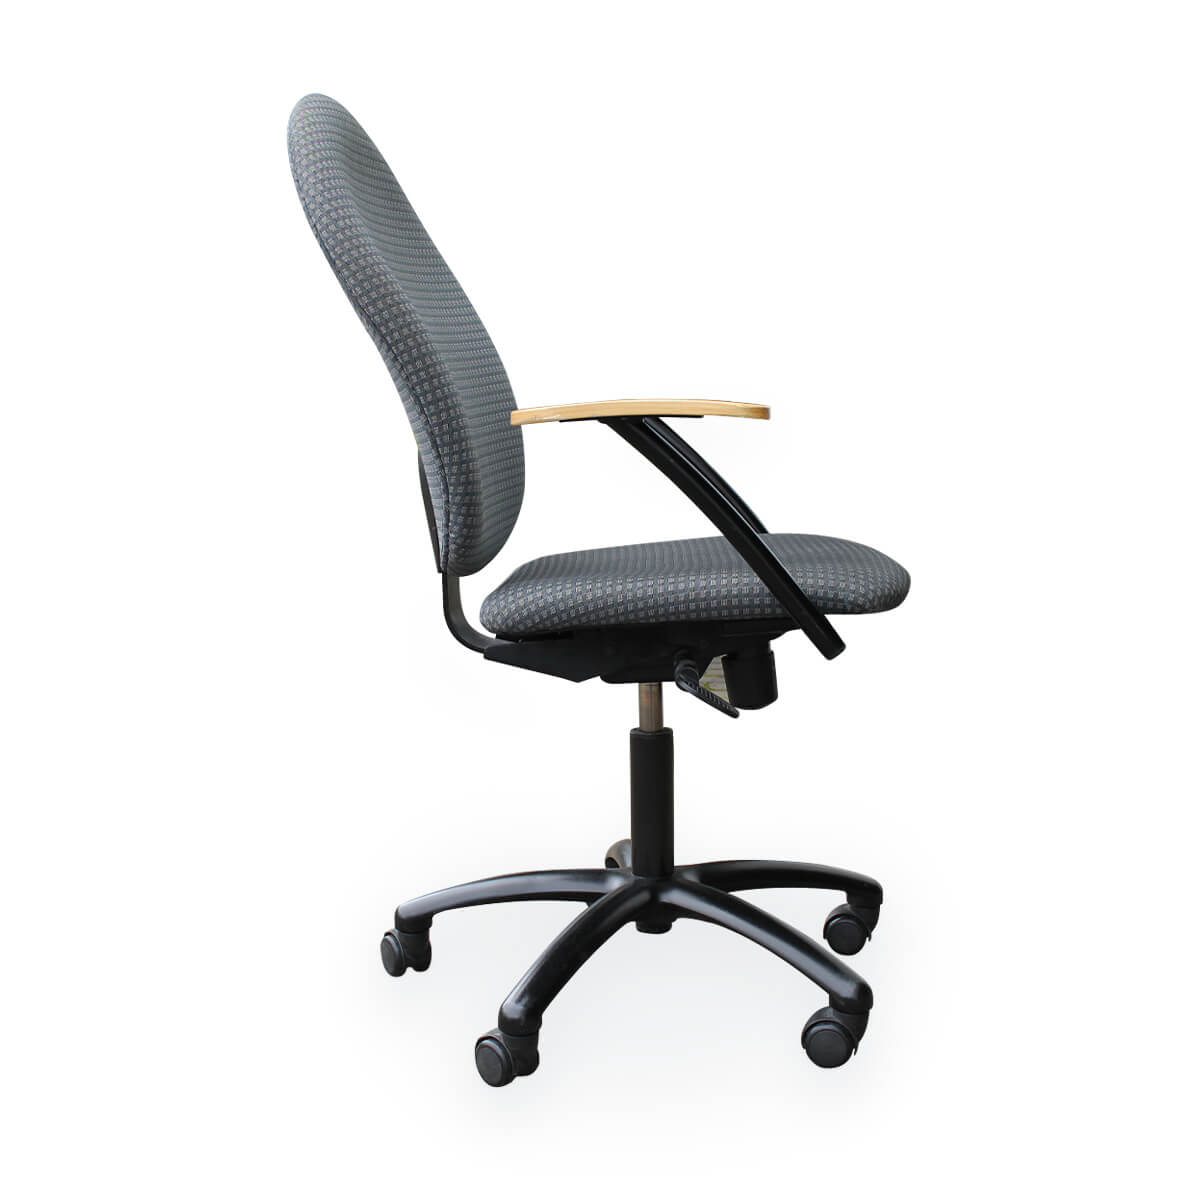 Naudotos biuro kėdės - Narbutas - Top star